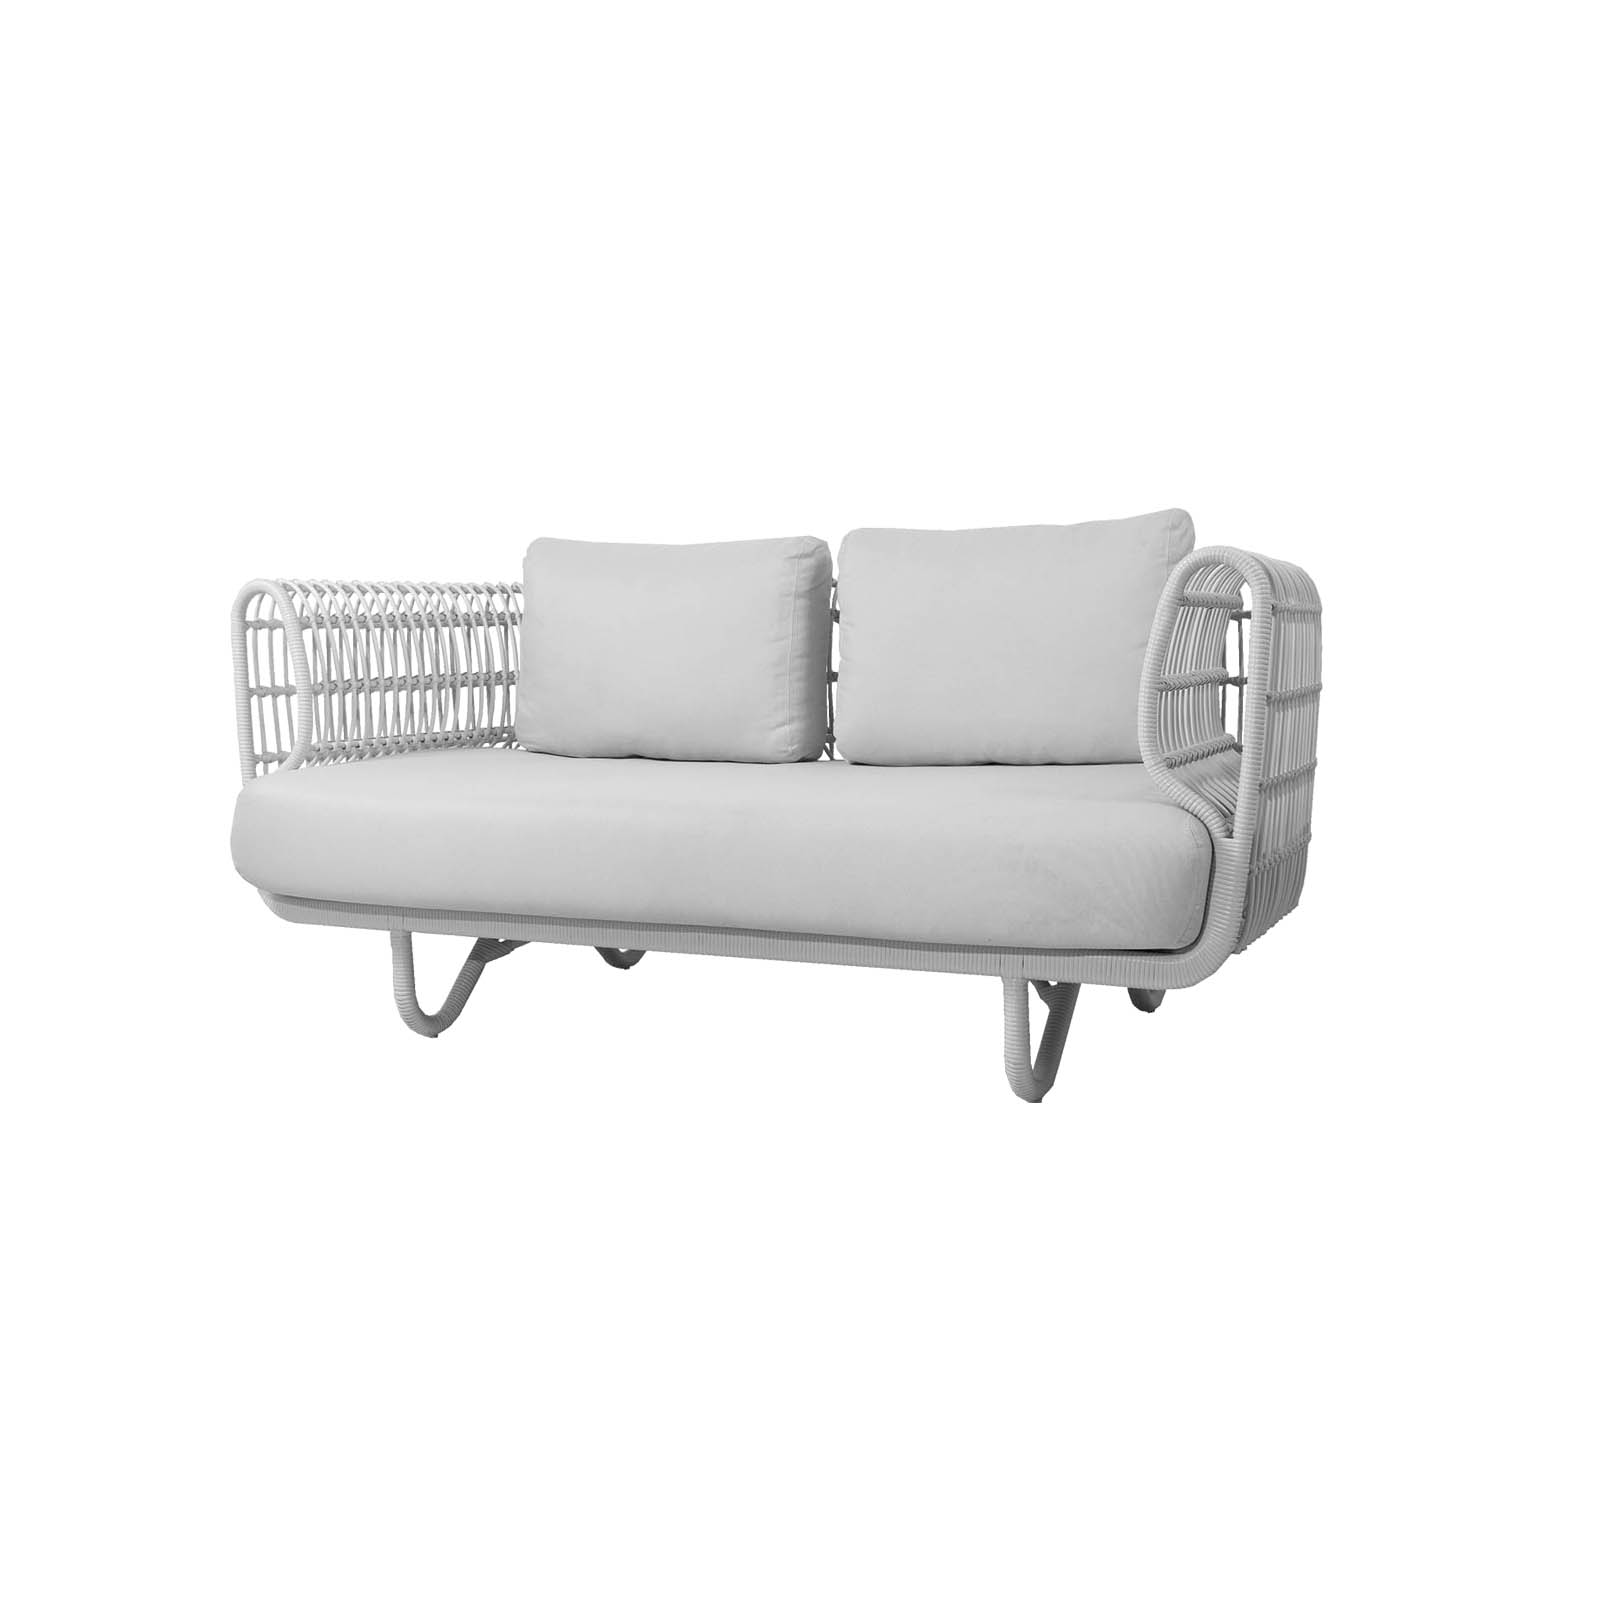 Nest 2-Sitzer Sofa aus Cane-line Weave in White mit Kissen aus Cane-line Natté in White